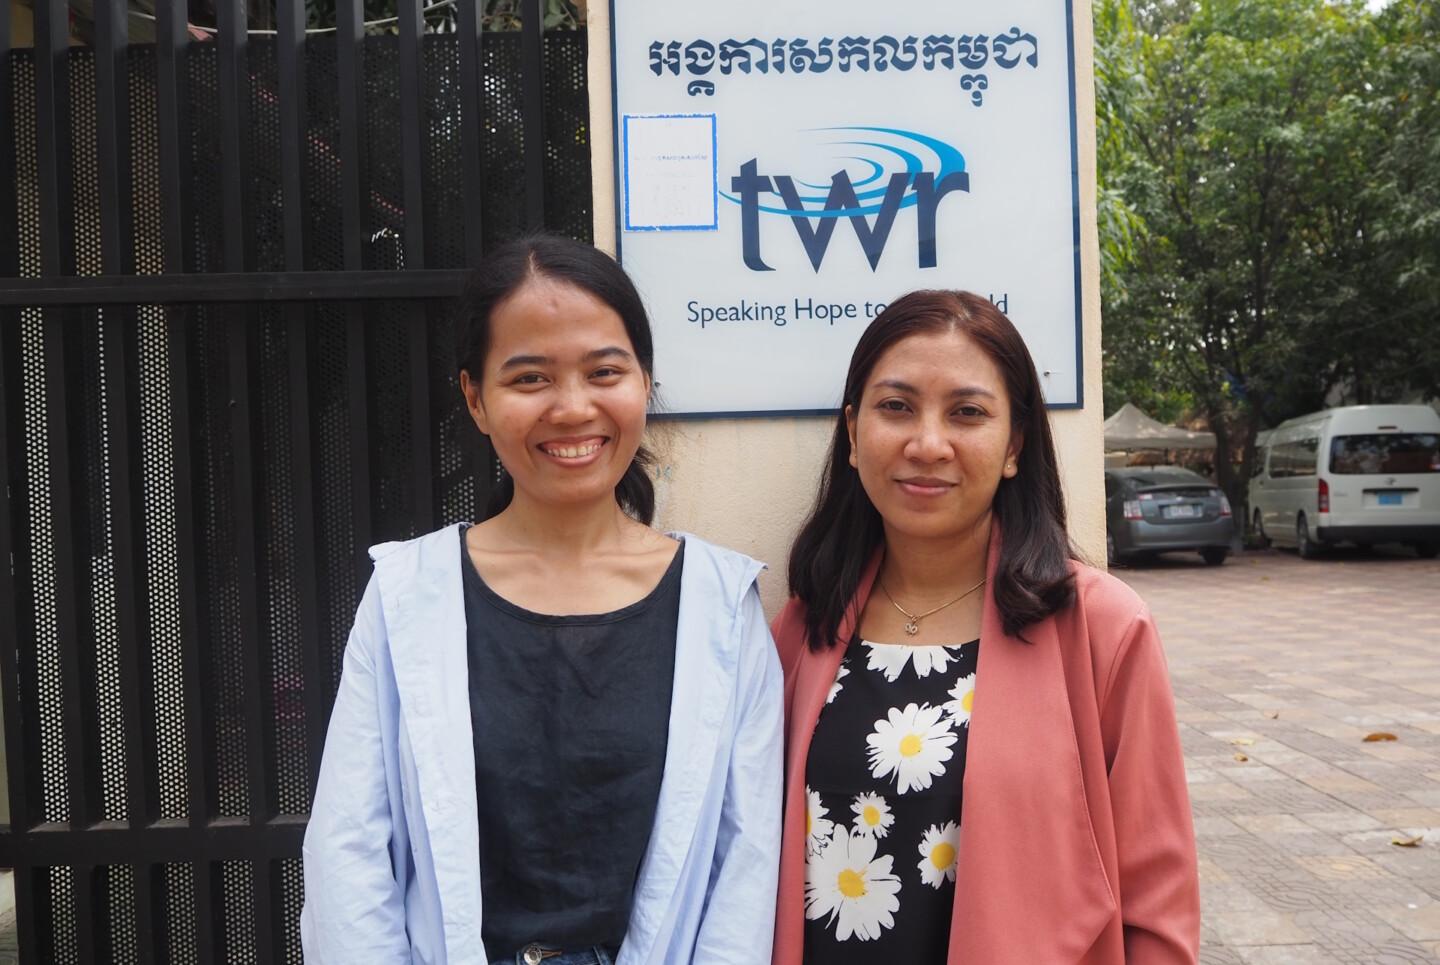 Kambodžalaiset naiset Sreymich Chea ja Ith Pisey TWR:n toimiston edustalla.